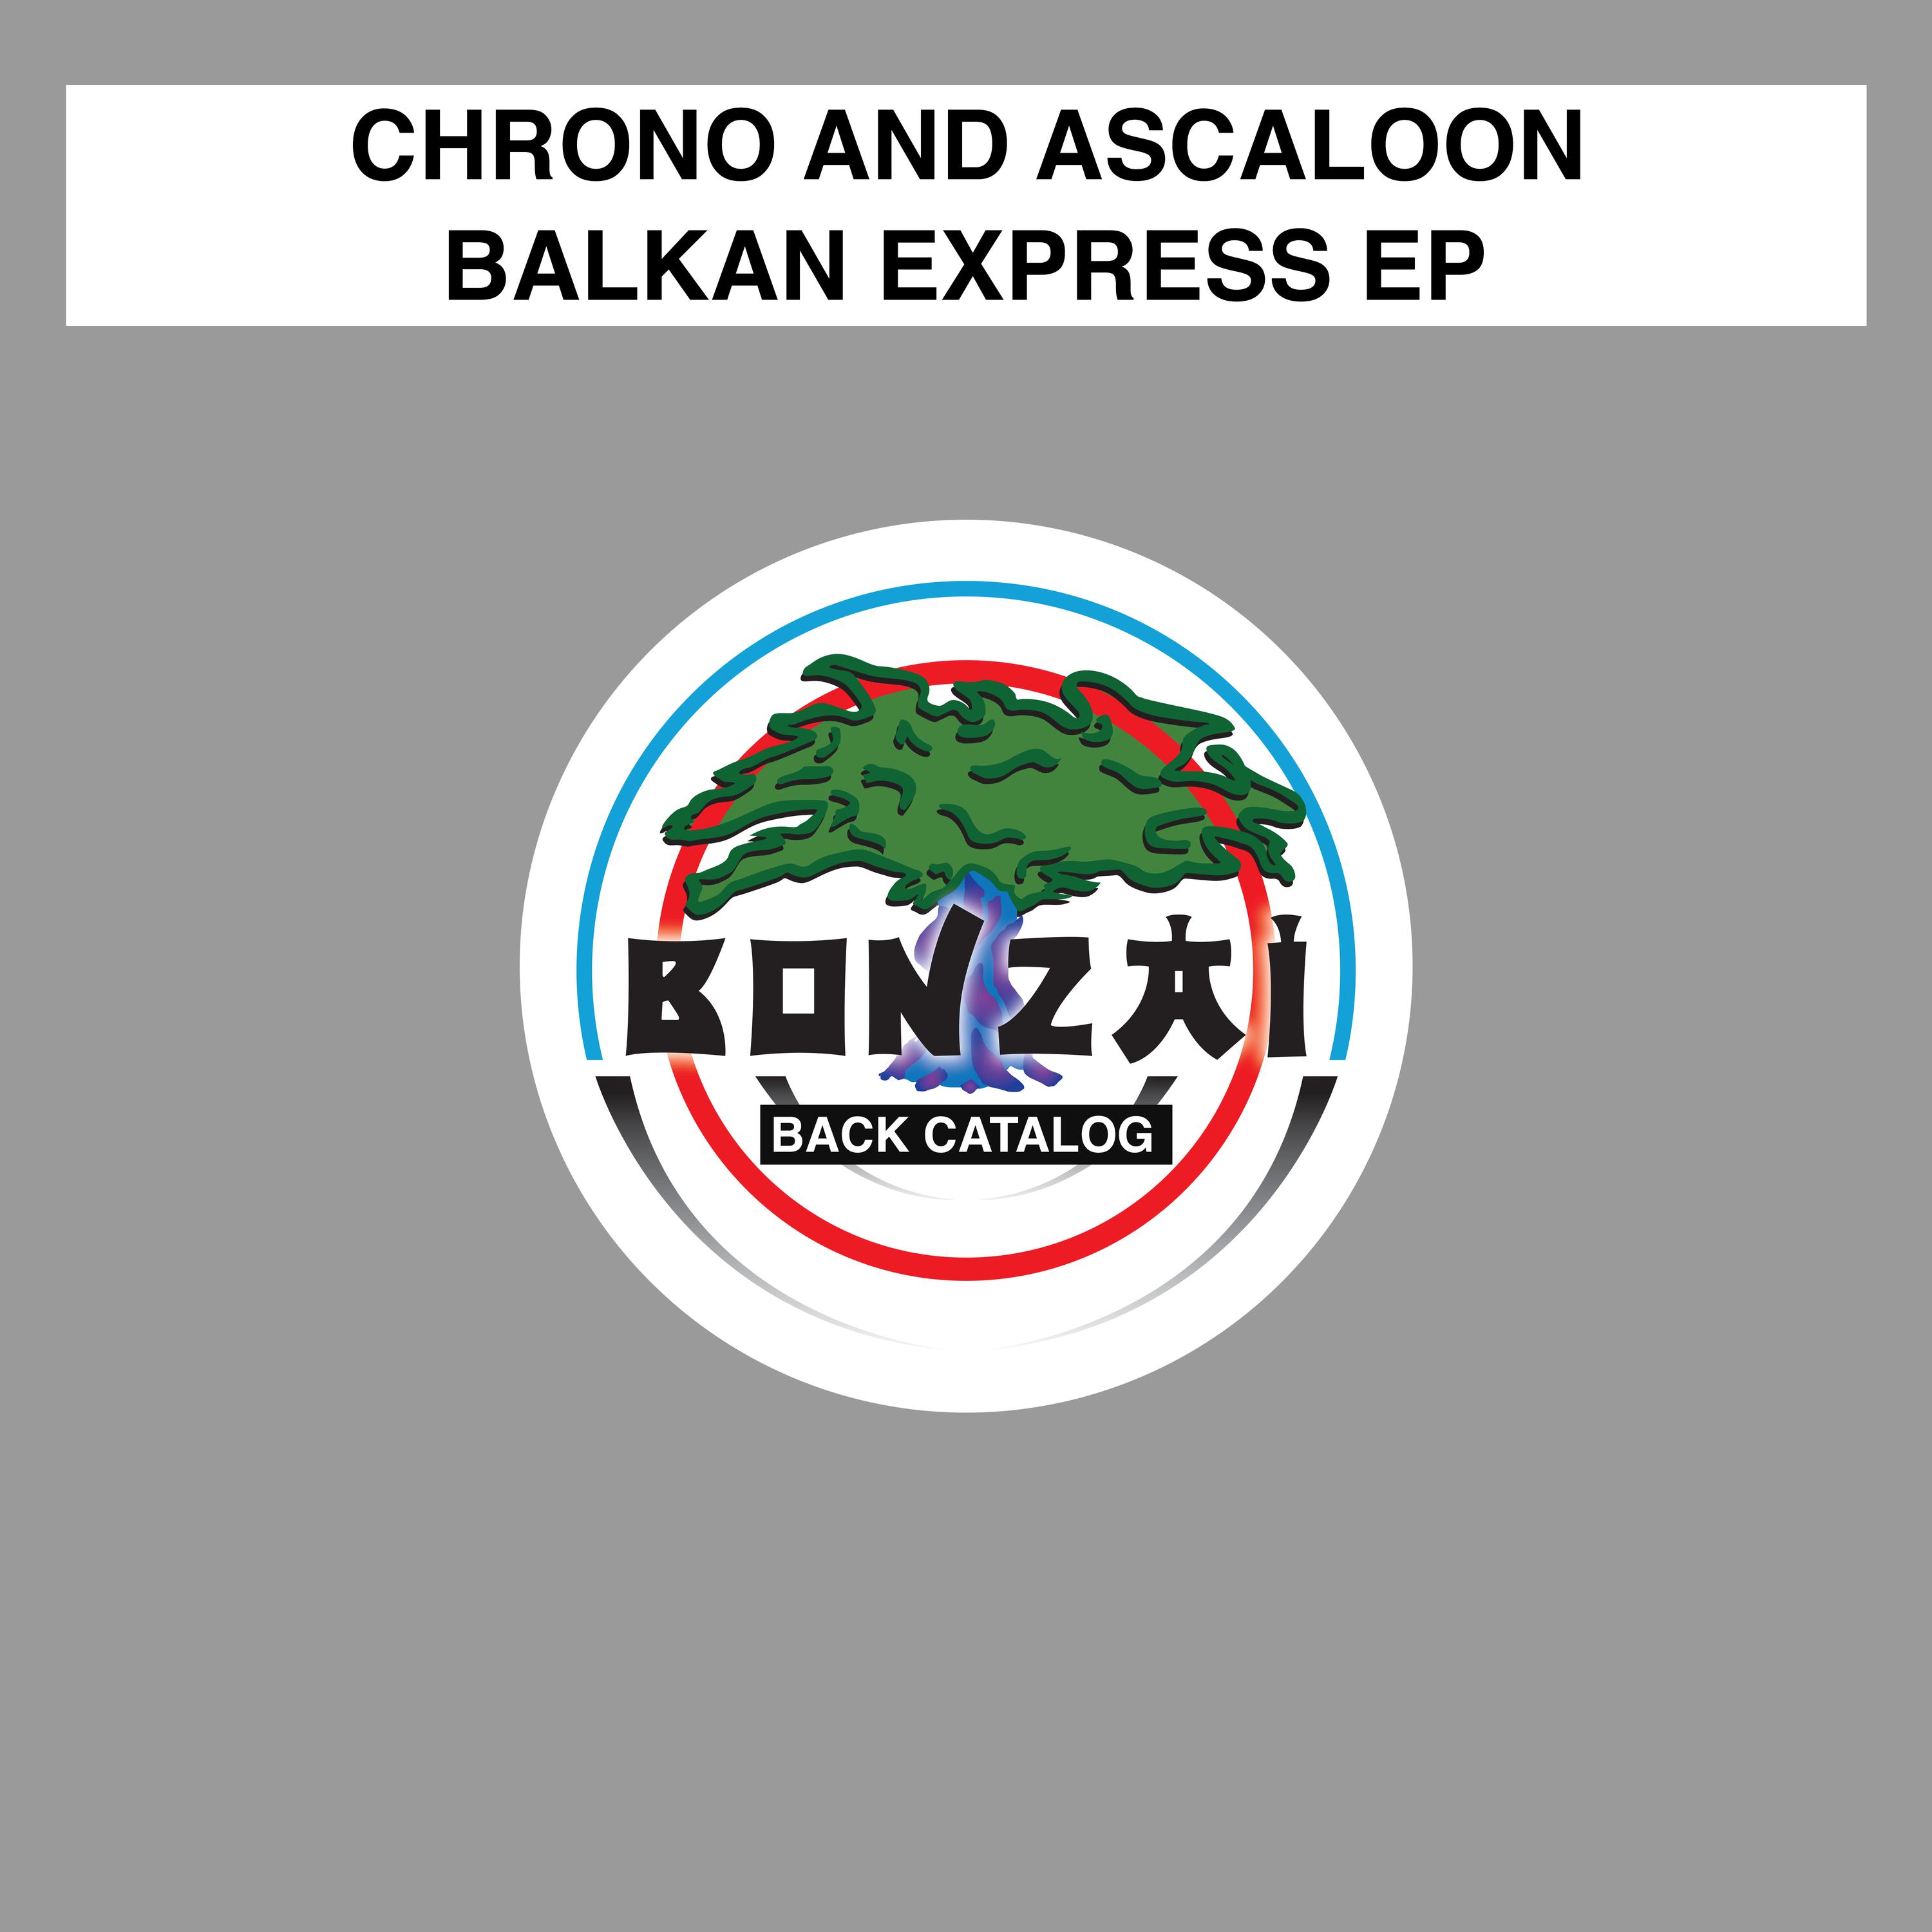 Balkan Express EP